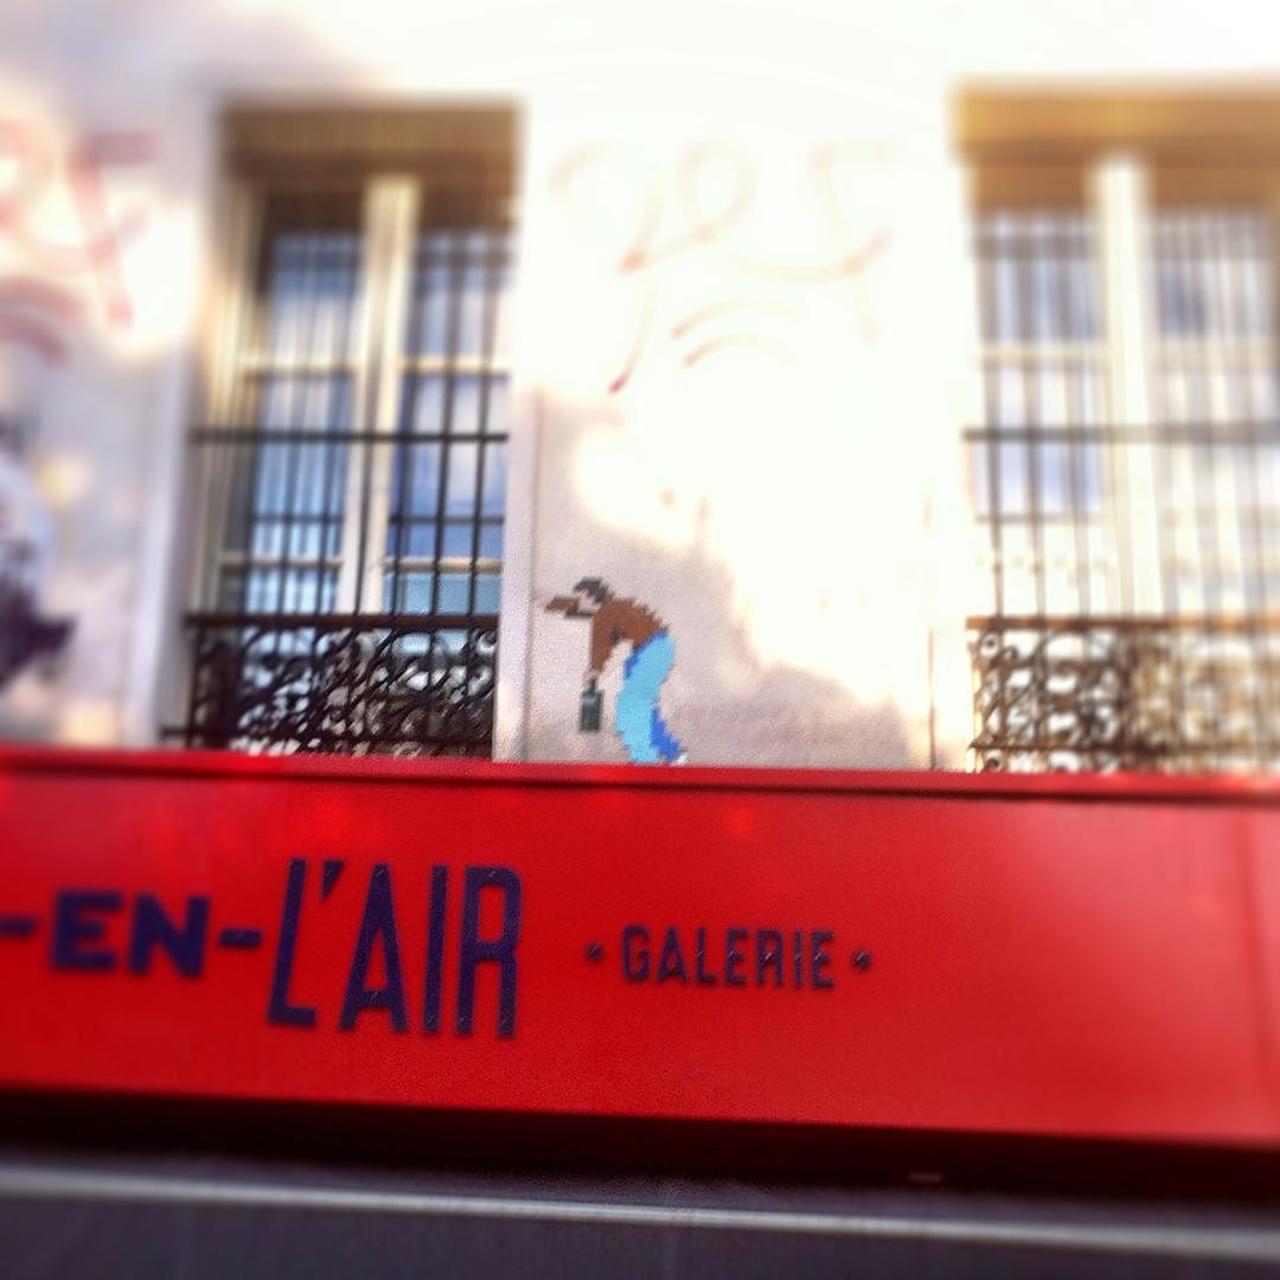 #Paris #graffiti photo by @noamzucker http://ift.tt/1QsxCz3 #StreetArt http://t.co/KaqN6tgN41